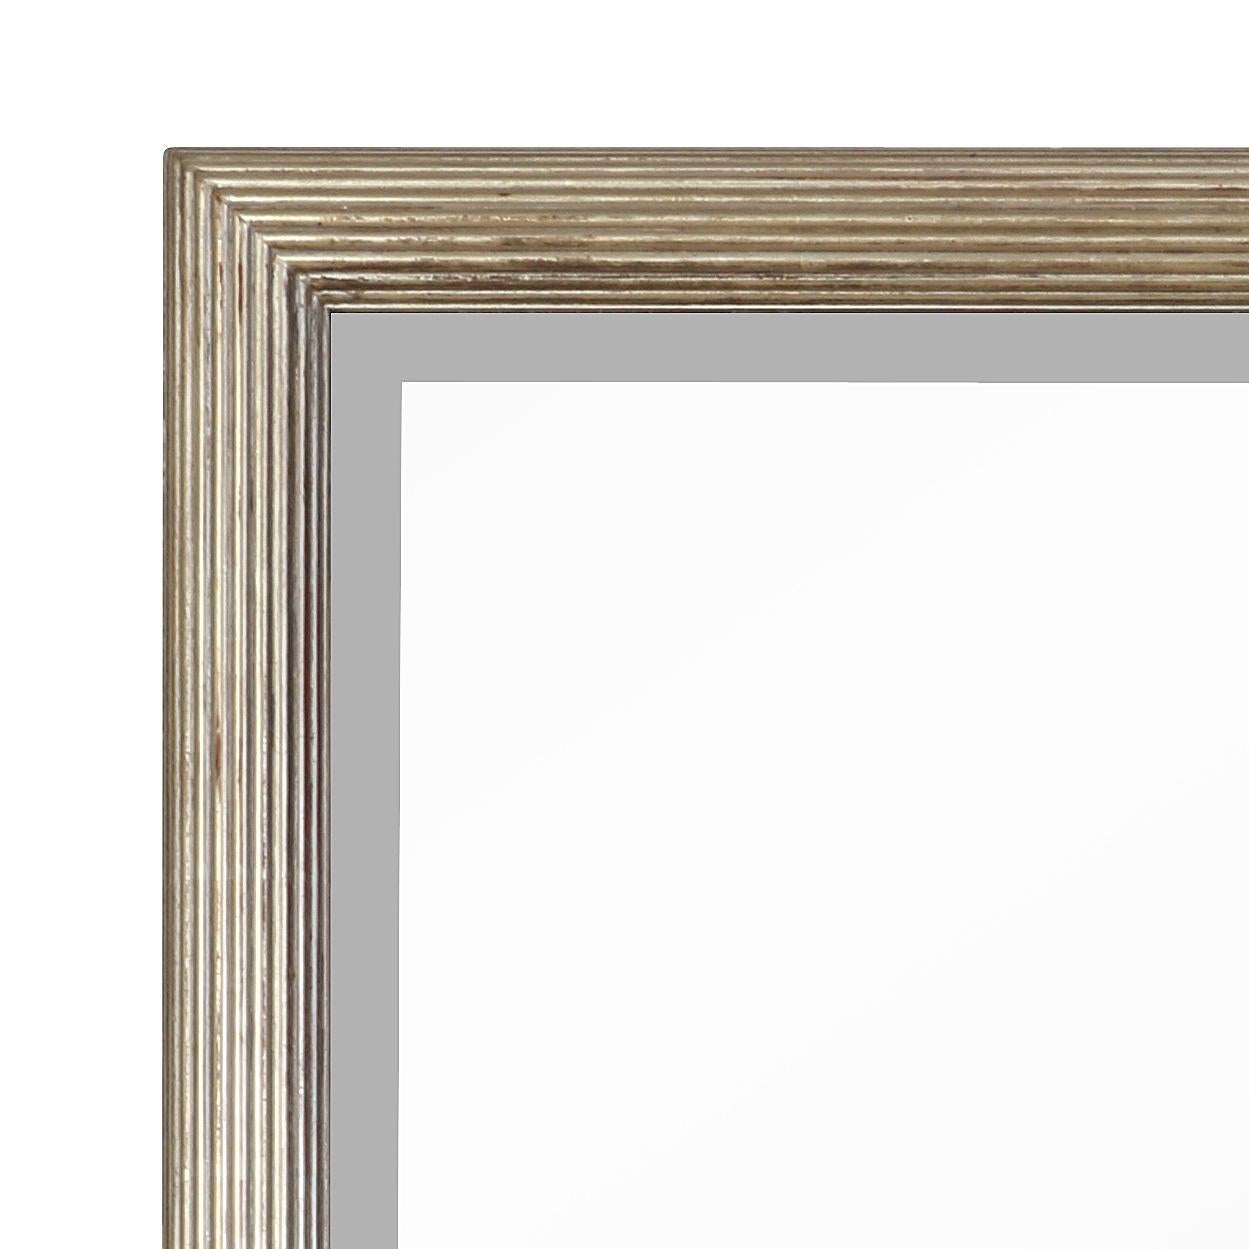 Miroir rectangulaire en feuille d'argent avec un cadre cannelé et nervuré.  Le beau miroir peut s'intégrer dans une variété de styles de pièces.